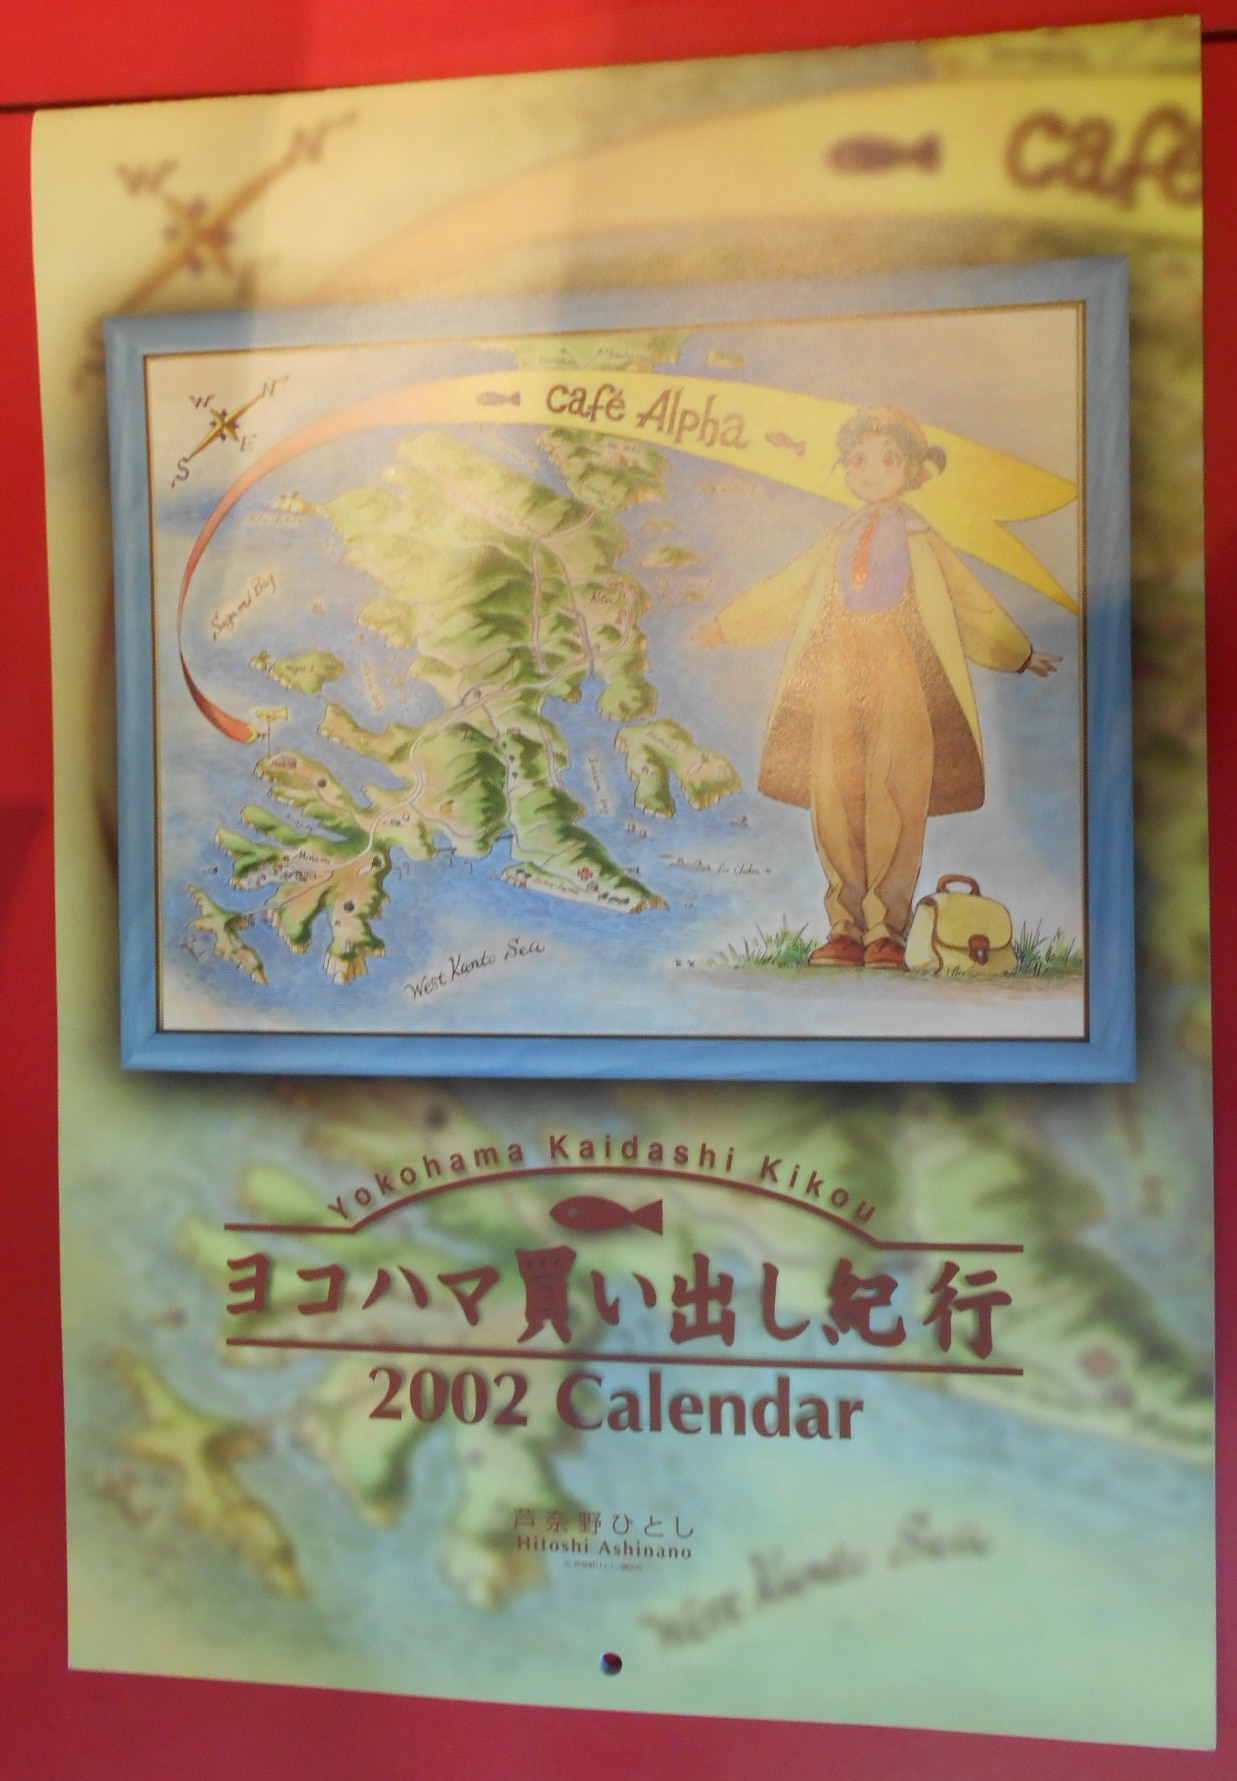 講談社 芦名野ひとし ヨコハマ買い出し紀行カレンダー 2002 